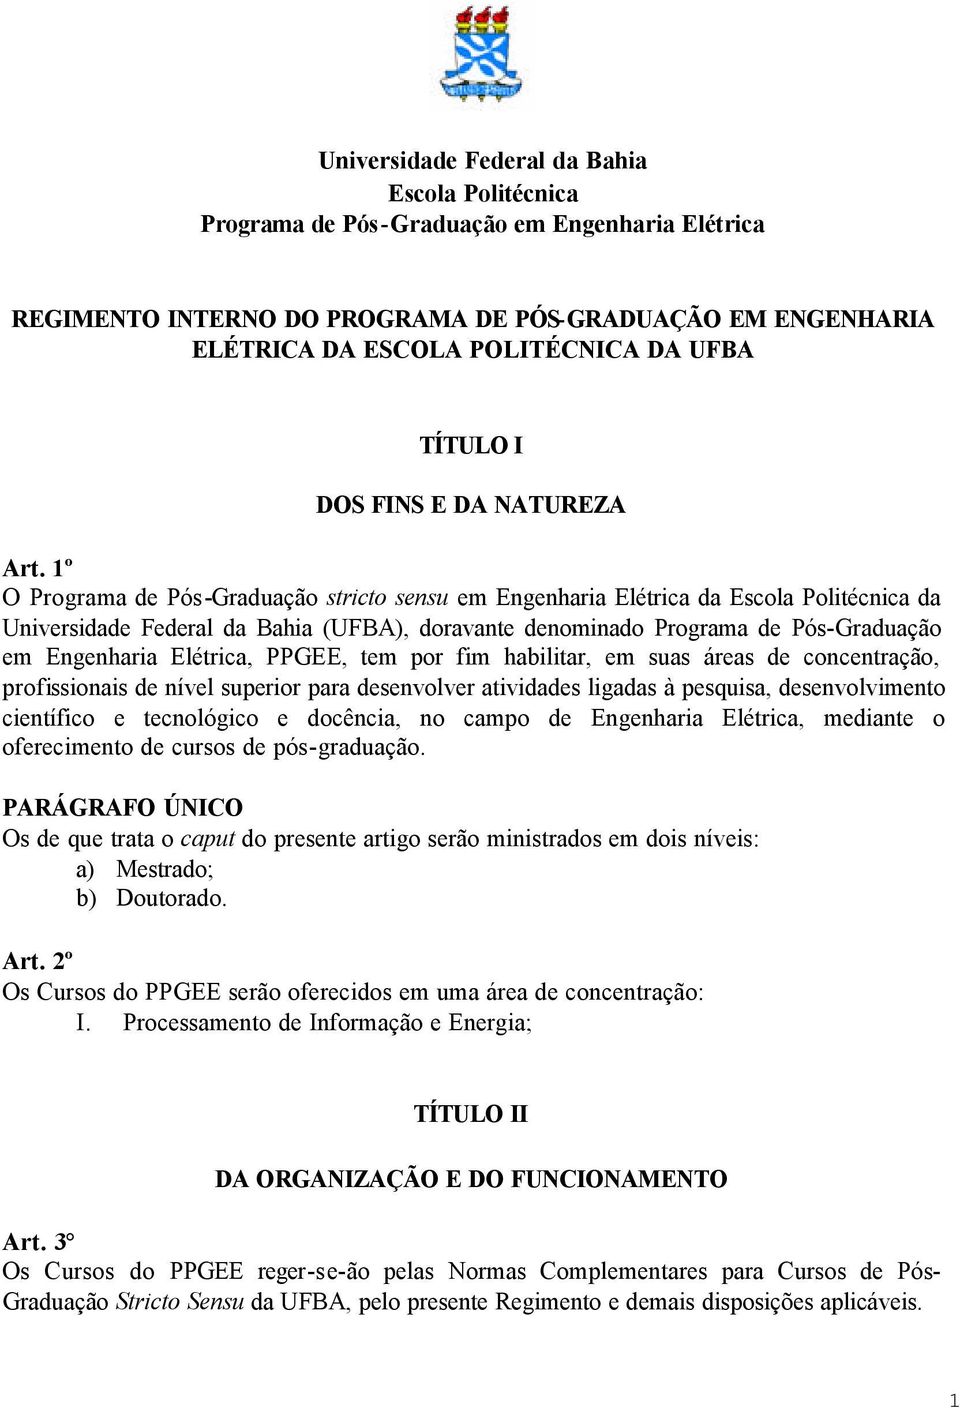 1º O Programa de Pós-Graduação stricto sensu em Engenharia Elétrica da Escola Politécnica da Universidade Federal da Bahia (UFBA), doravante denominado Programa de Pós-Graduação em Engenharia